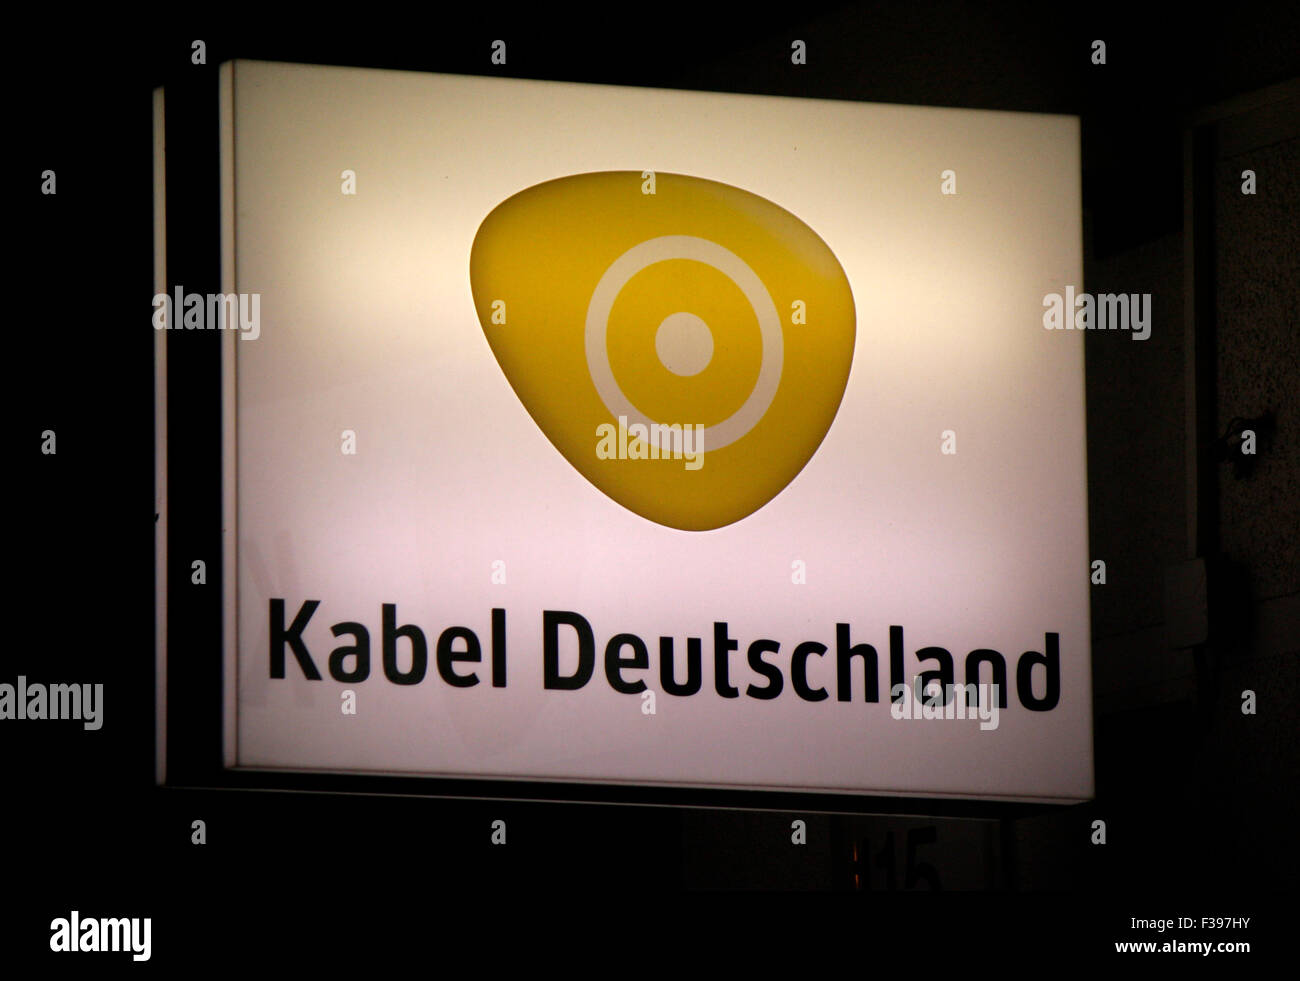 Markenname: "Kabel Deutschland", Berlin Stock Photo - Alamy